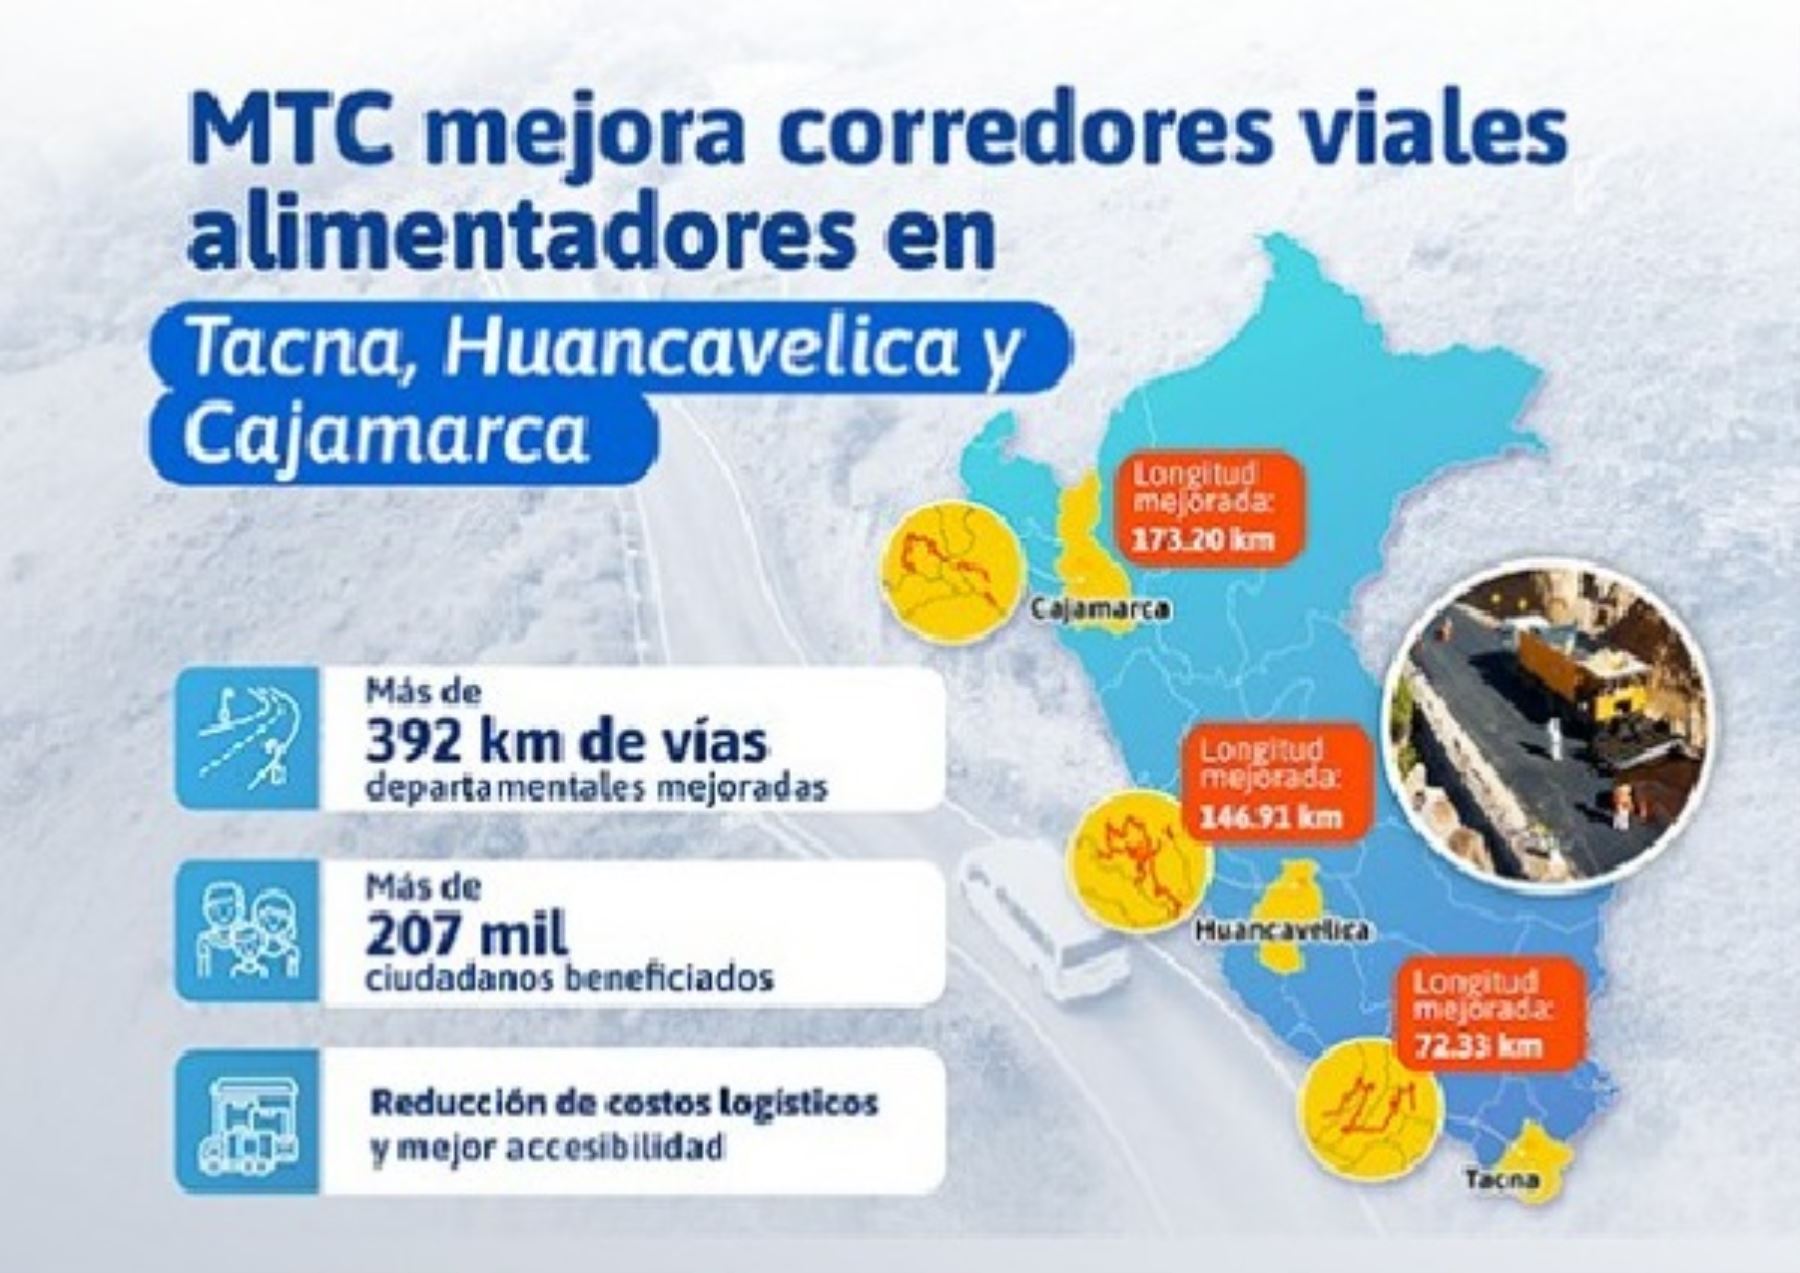 MTC culminan obras de mejoramiento en corredores viales alimentadores de Tacna, Huancavelica y Cajamarca. ANDINA/Difusión